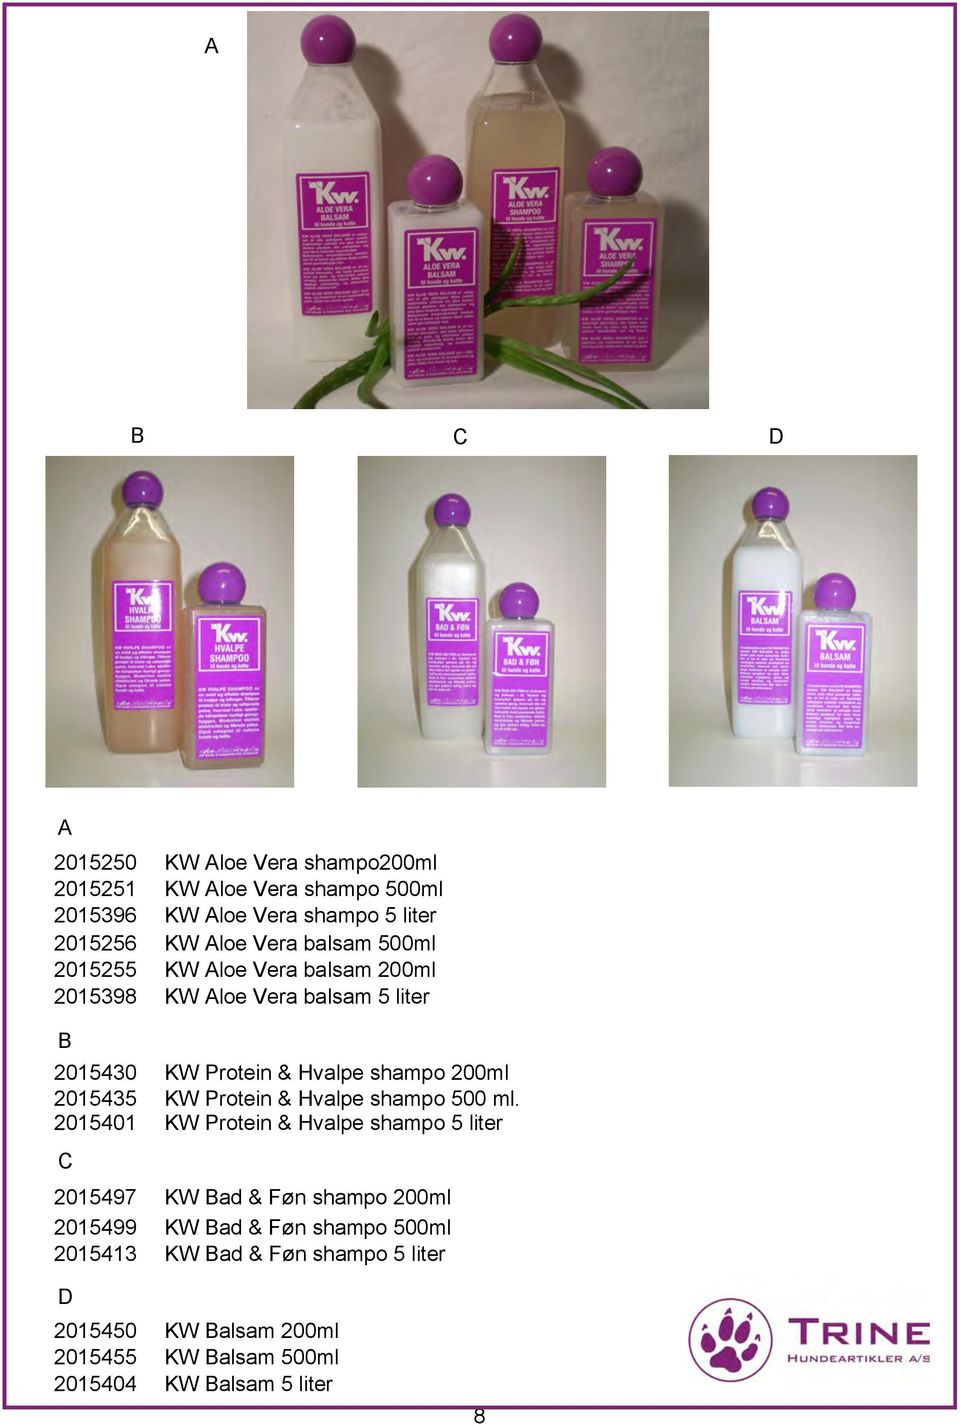 2015435 KW Protein & Hvalpe shampo 500 ml.